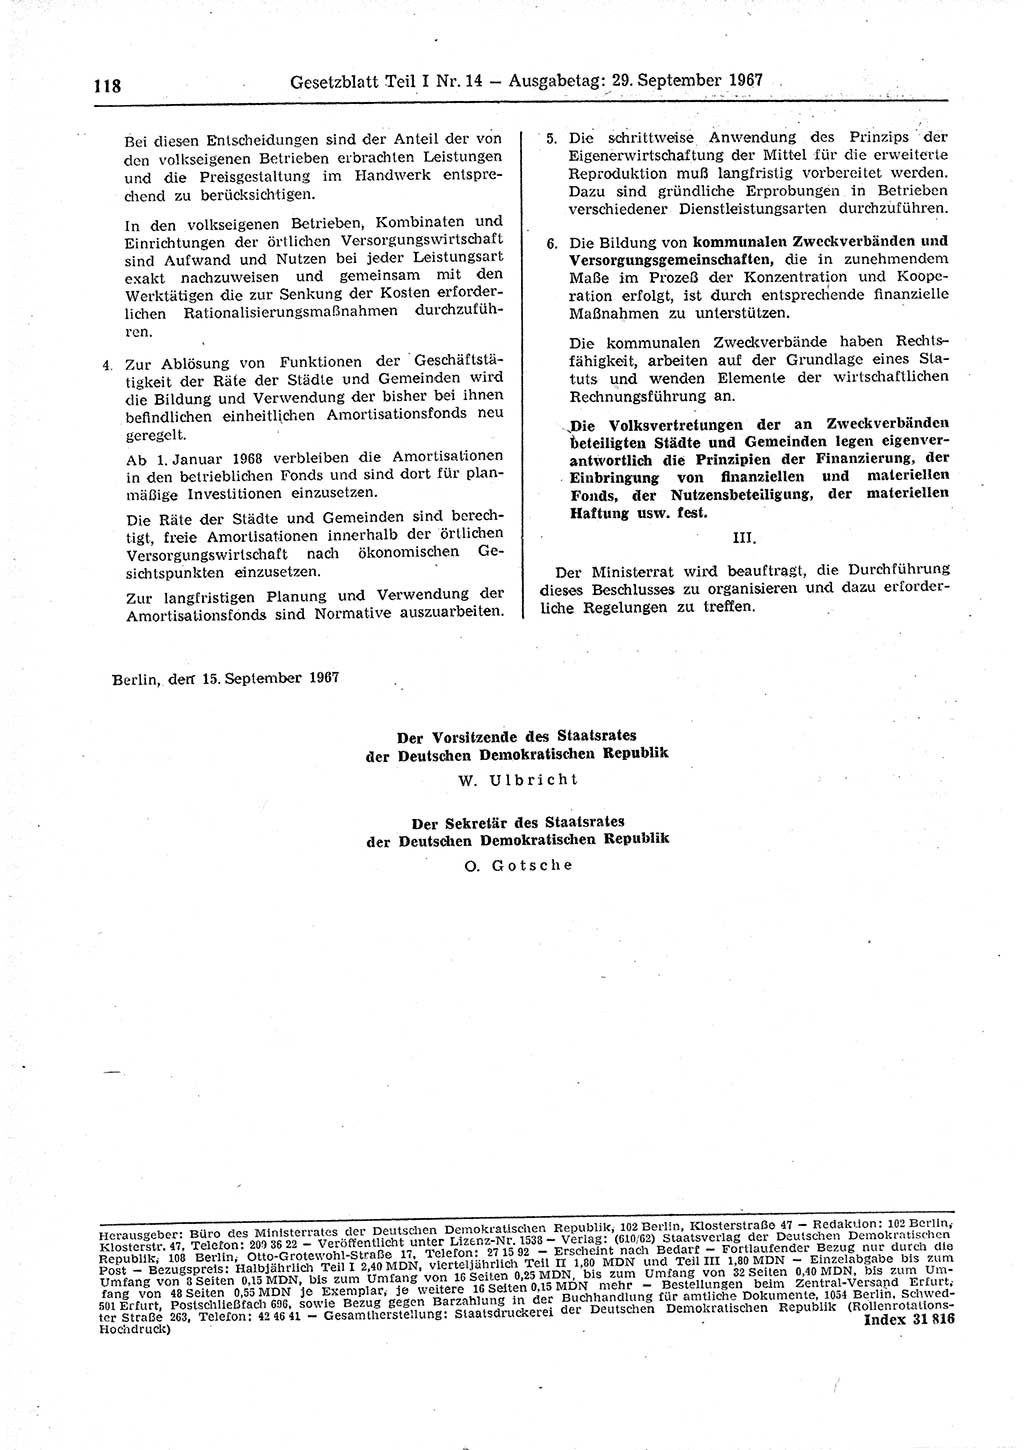 Gesetzblatt (GBl.) der Deutschen Demokratischen Republik (DDR) Teil Ⅰ 1967, Seite 118 (GBl. DDR Ⅰ 1967, S. 118)